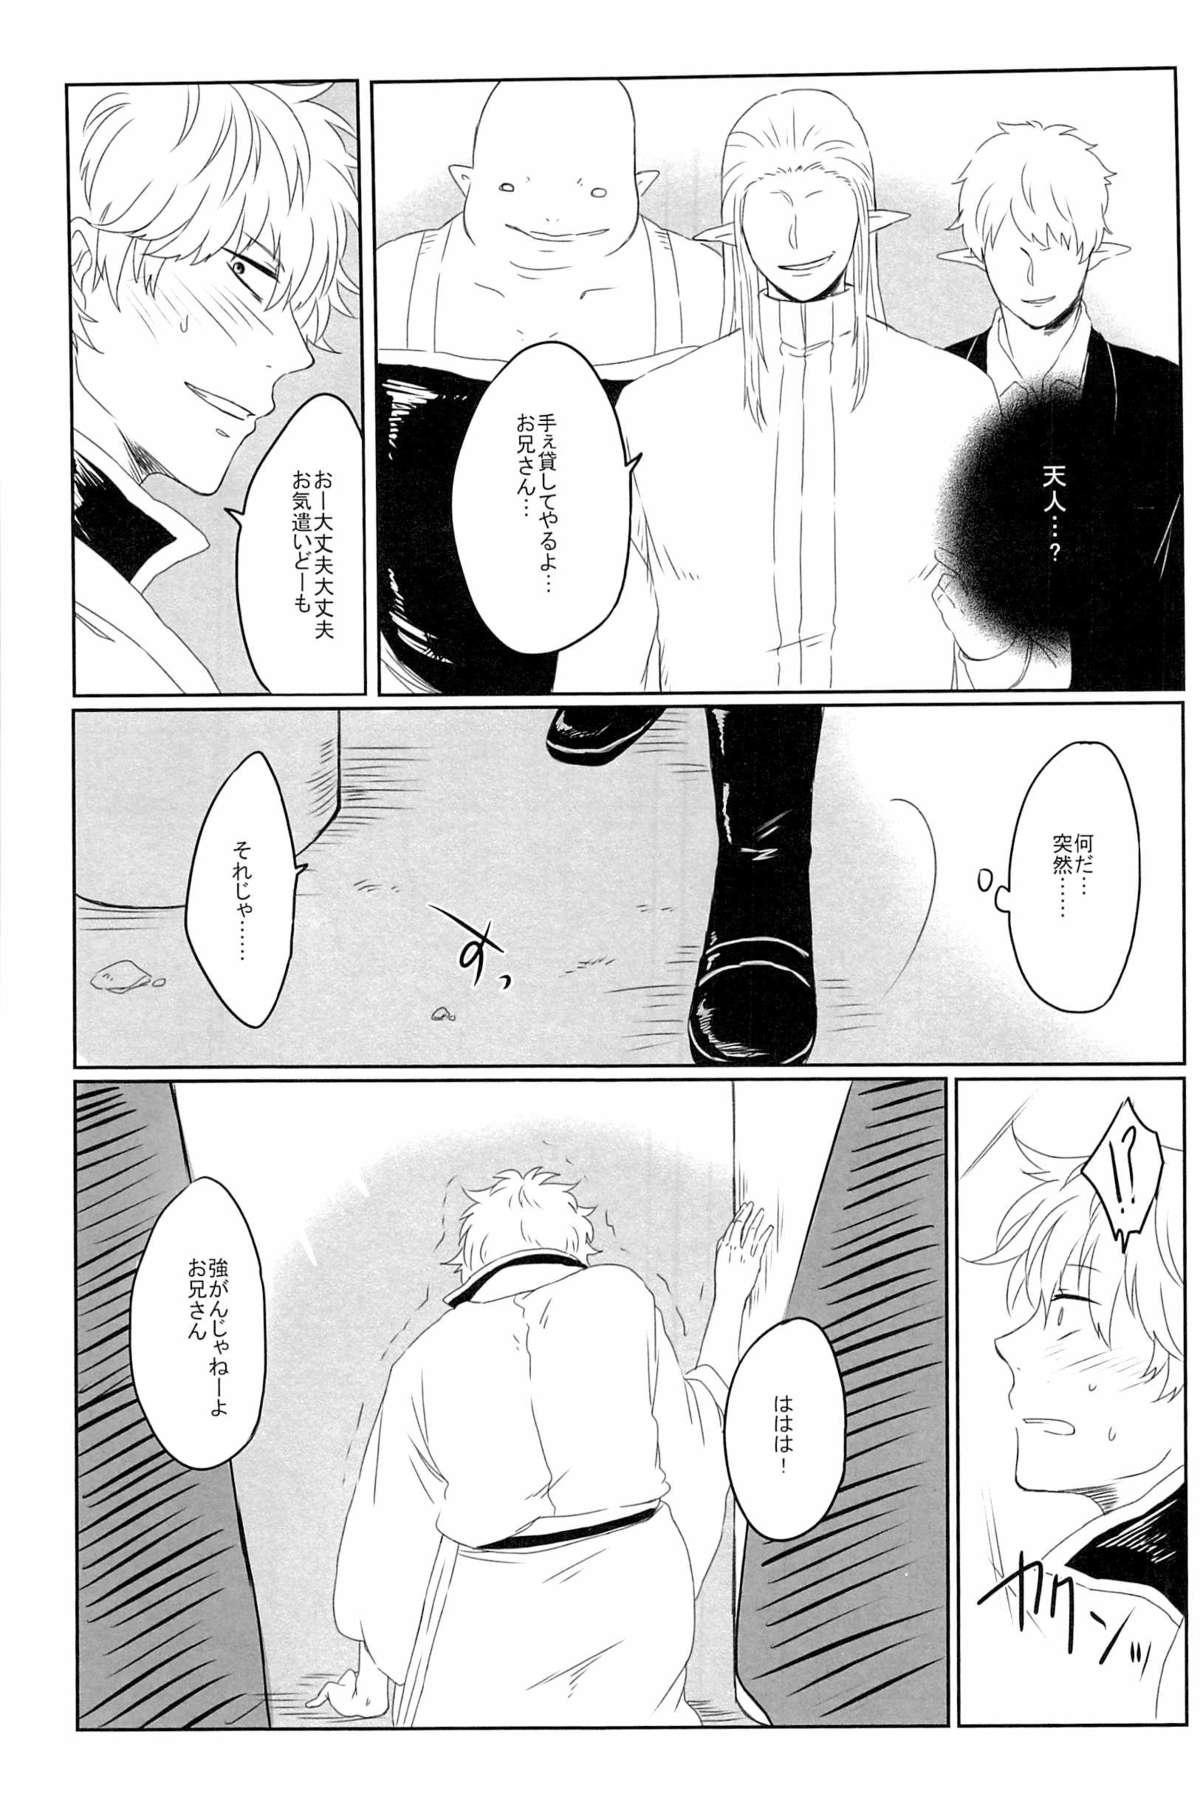 Shecock 性拷問 - Gintama Rabo - Page 7